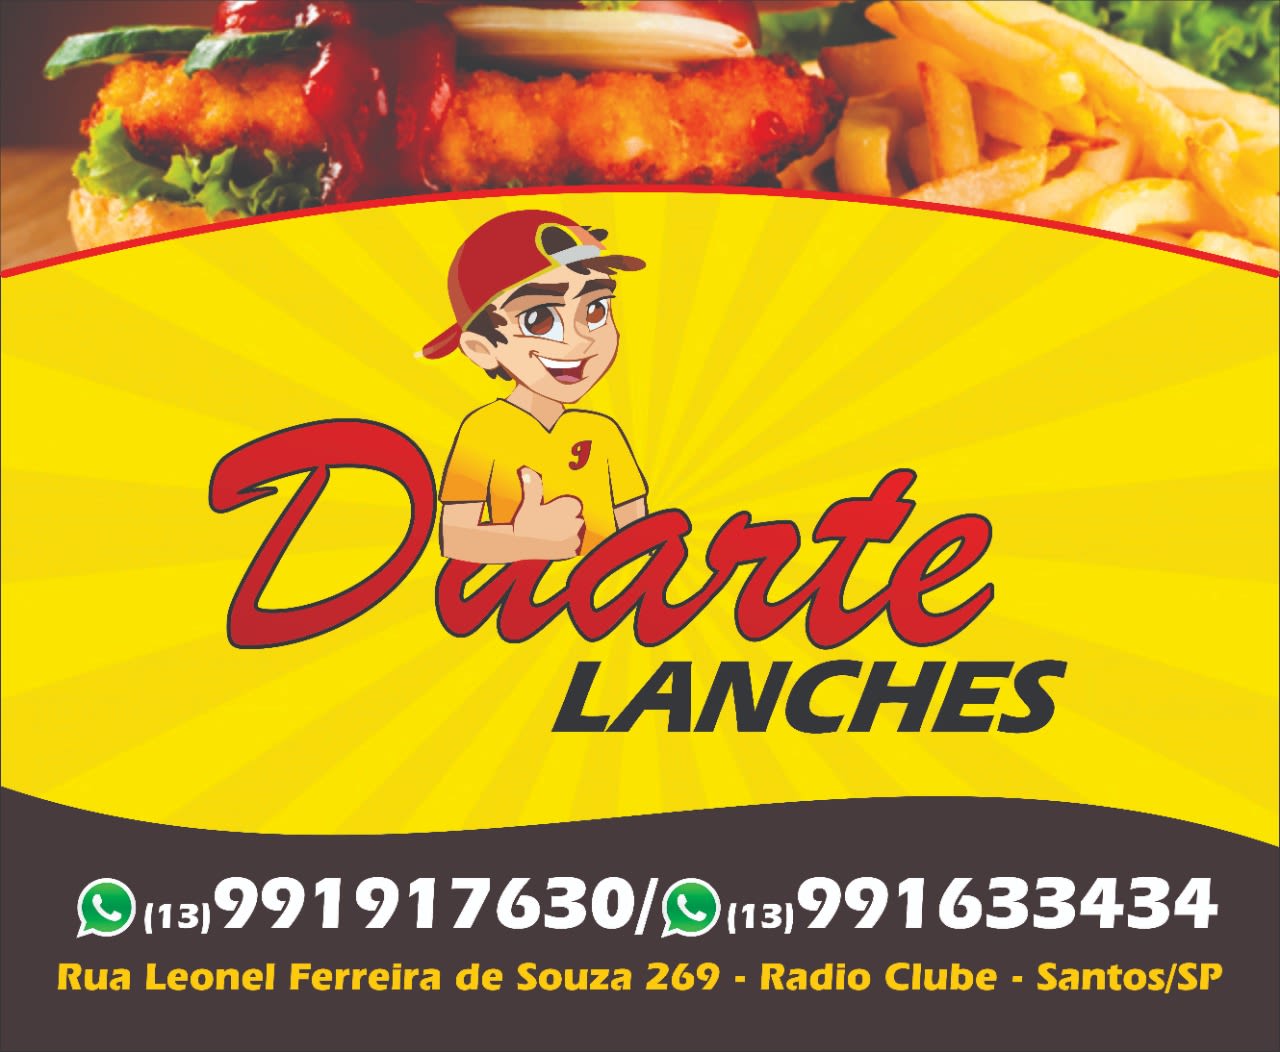 Duarte Lanches